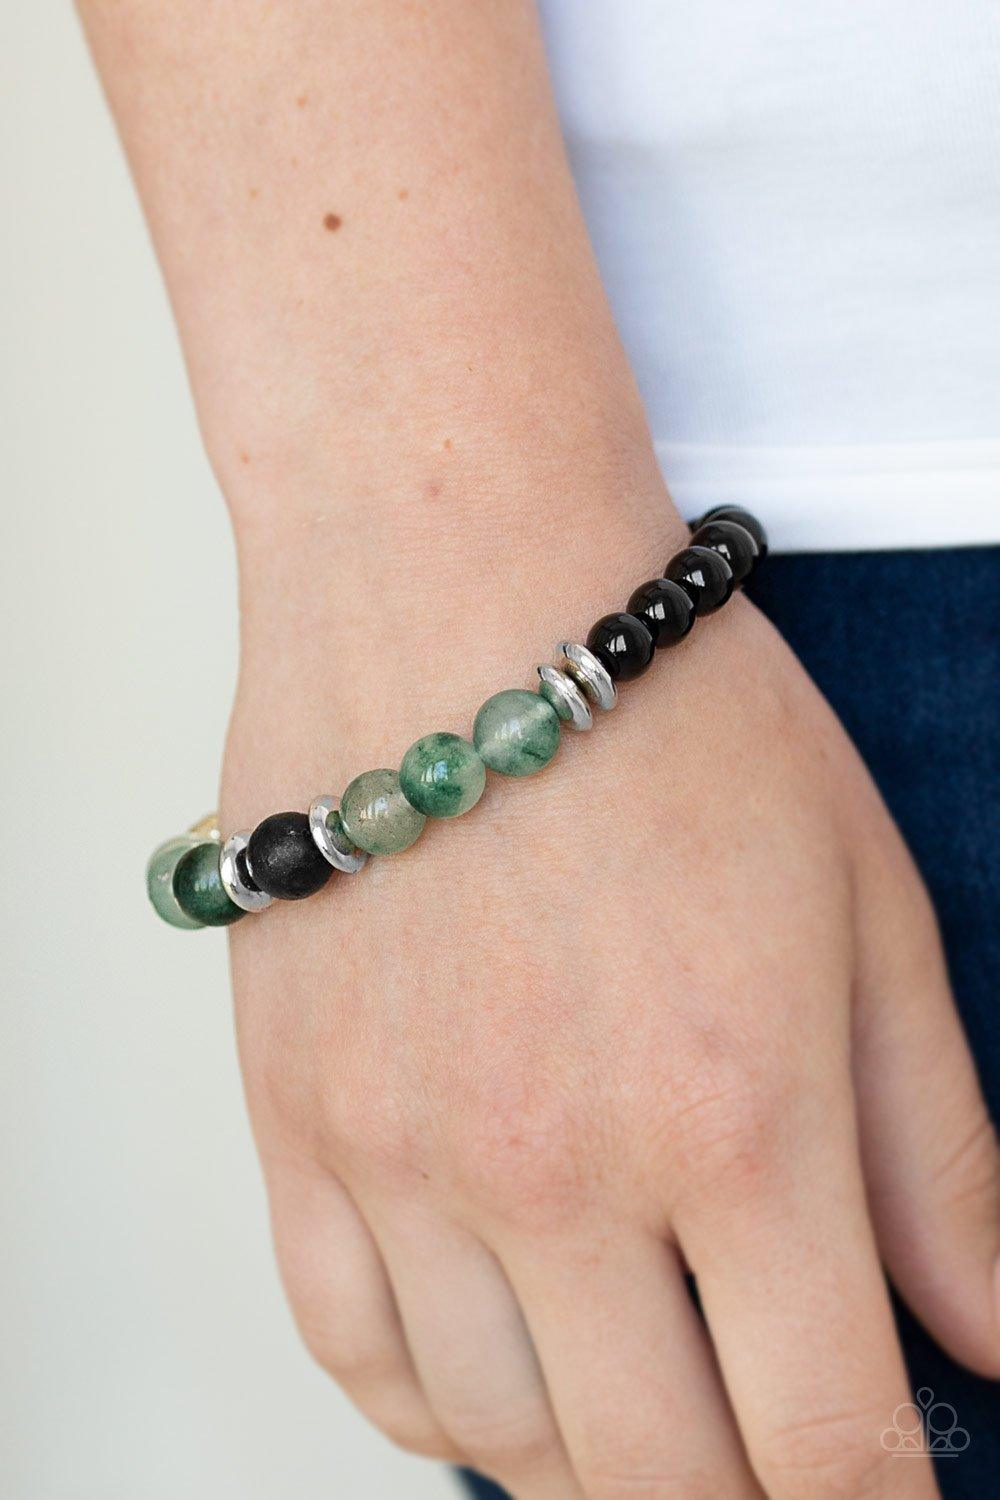 World Peace Green Bracelet - Jewelry by Bretta